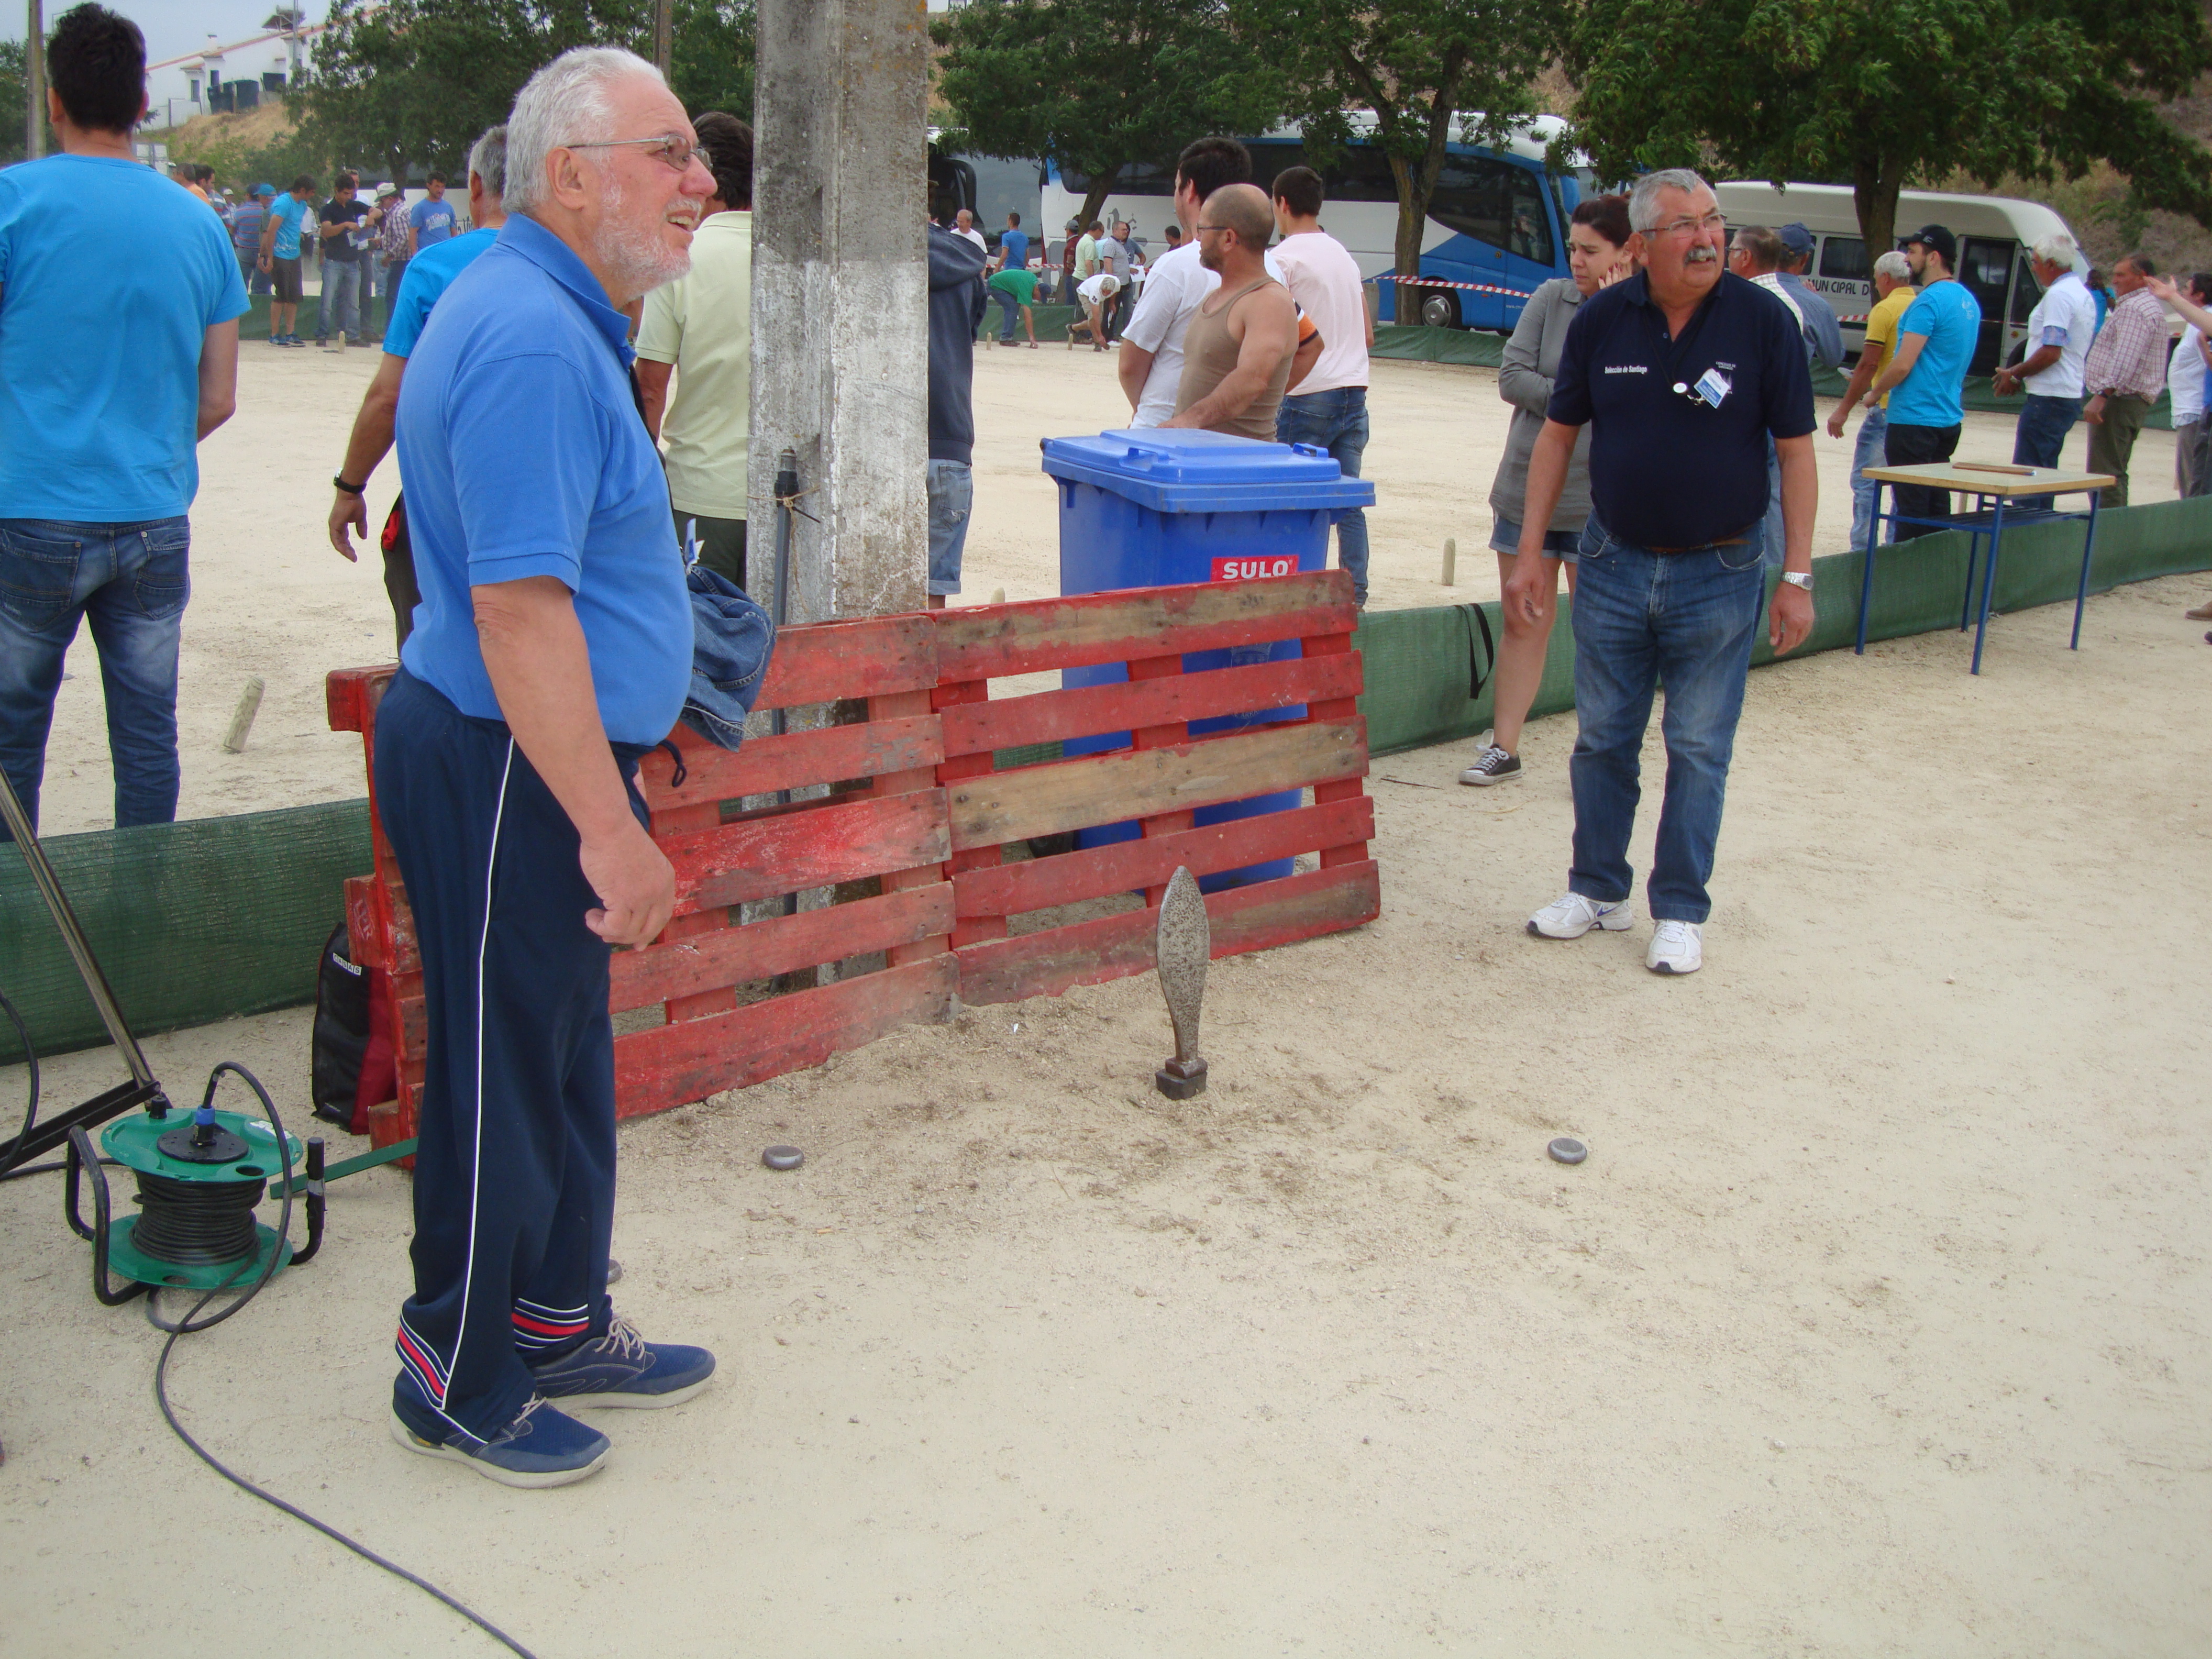 	The “Asociación de Xogadores de Chave” from Santiago de Compostela, Spain, brought their famous “La Chave” game to Arraiolos